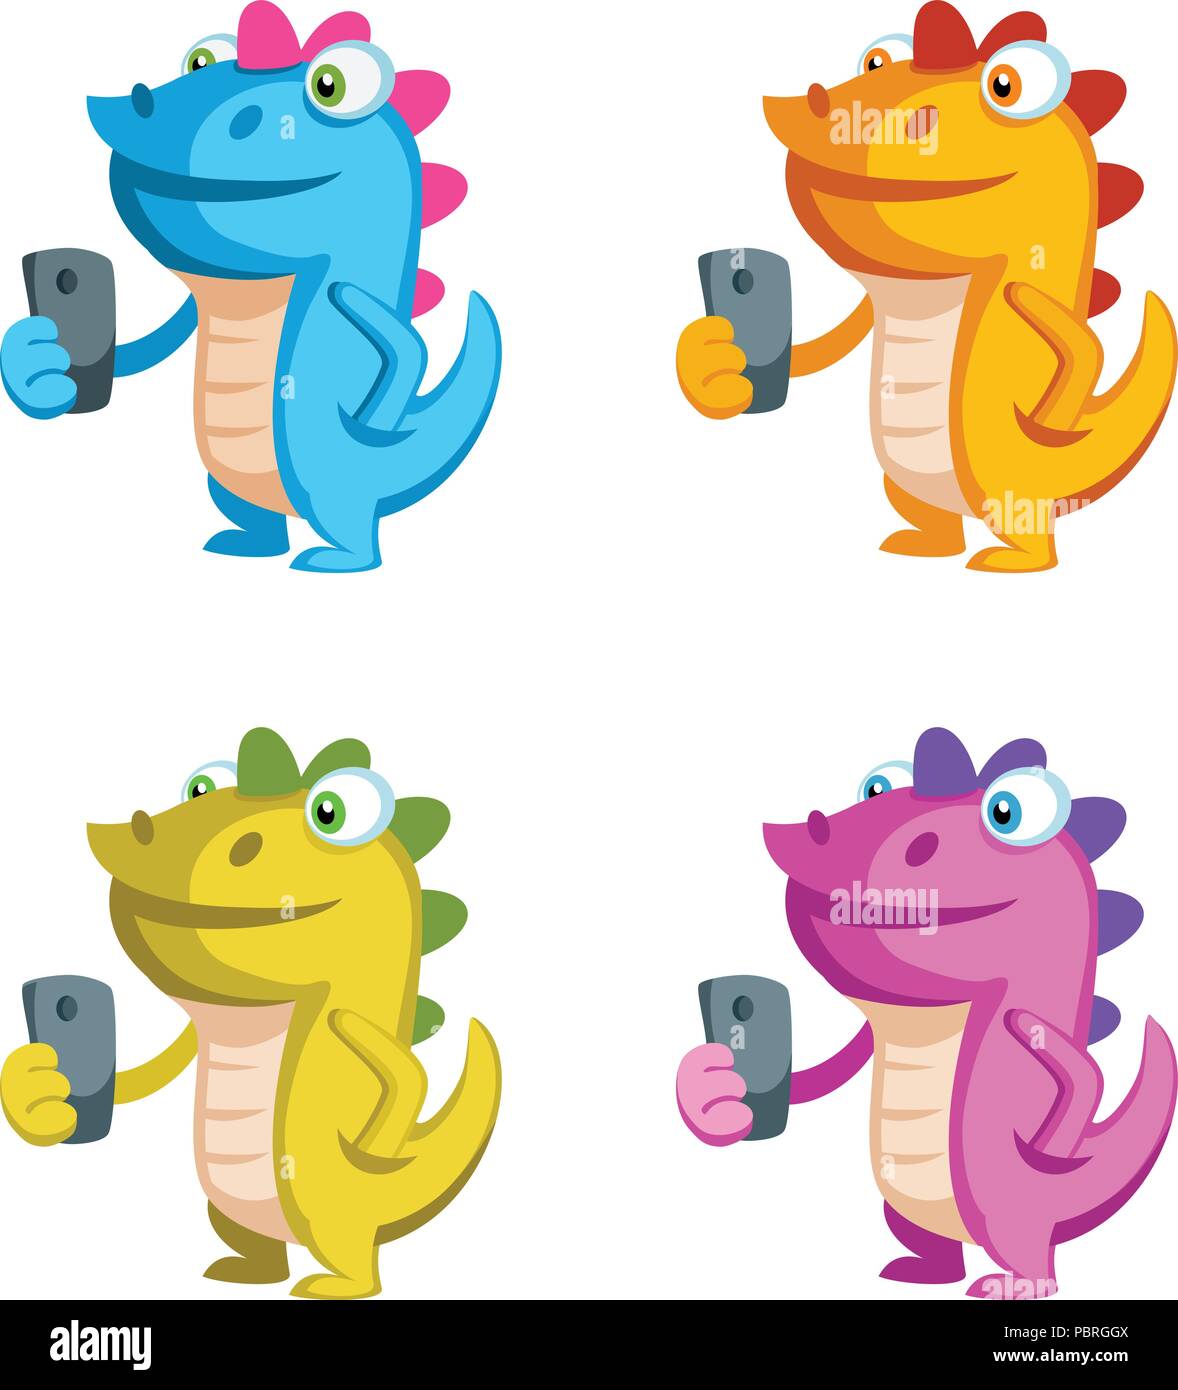 Cute cartoon dragon Charakter mit einem Telefon in unterschiedlichen Farben Stock Vektor